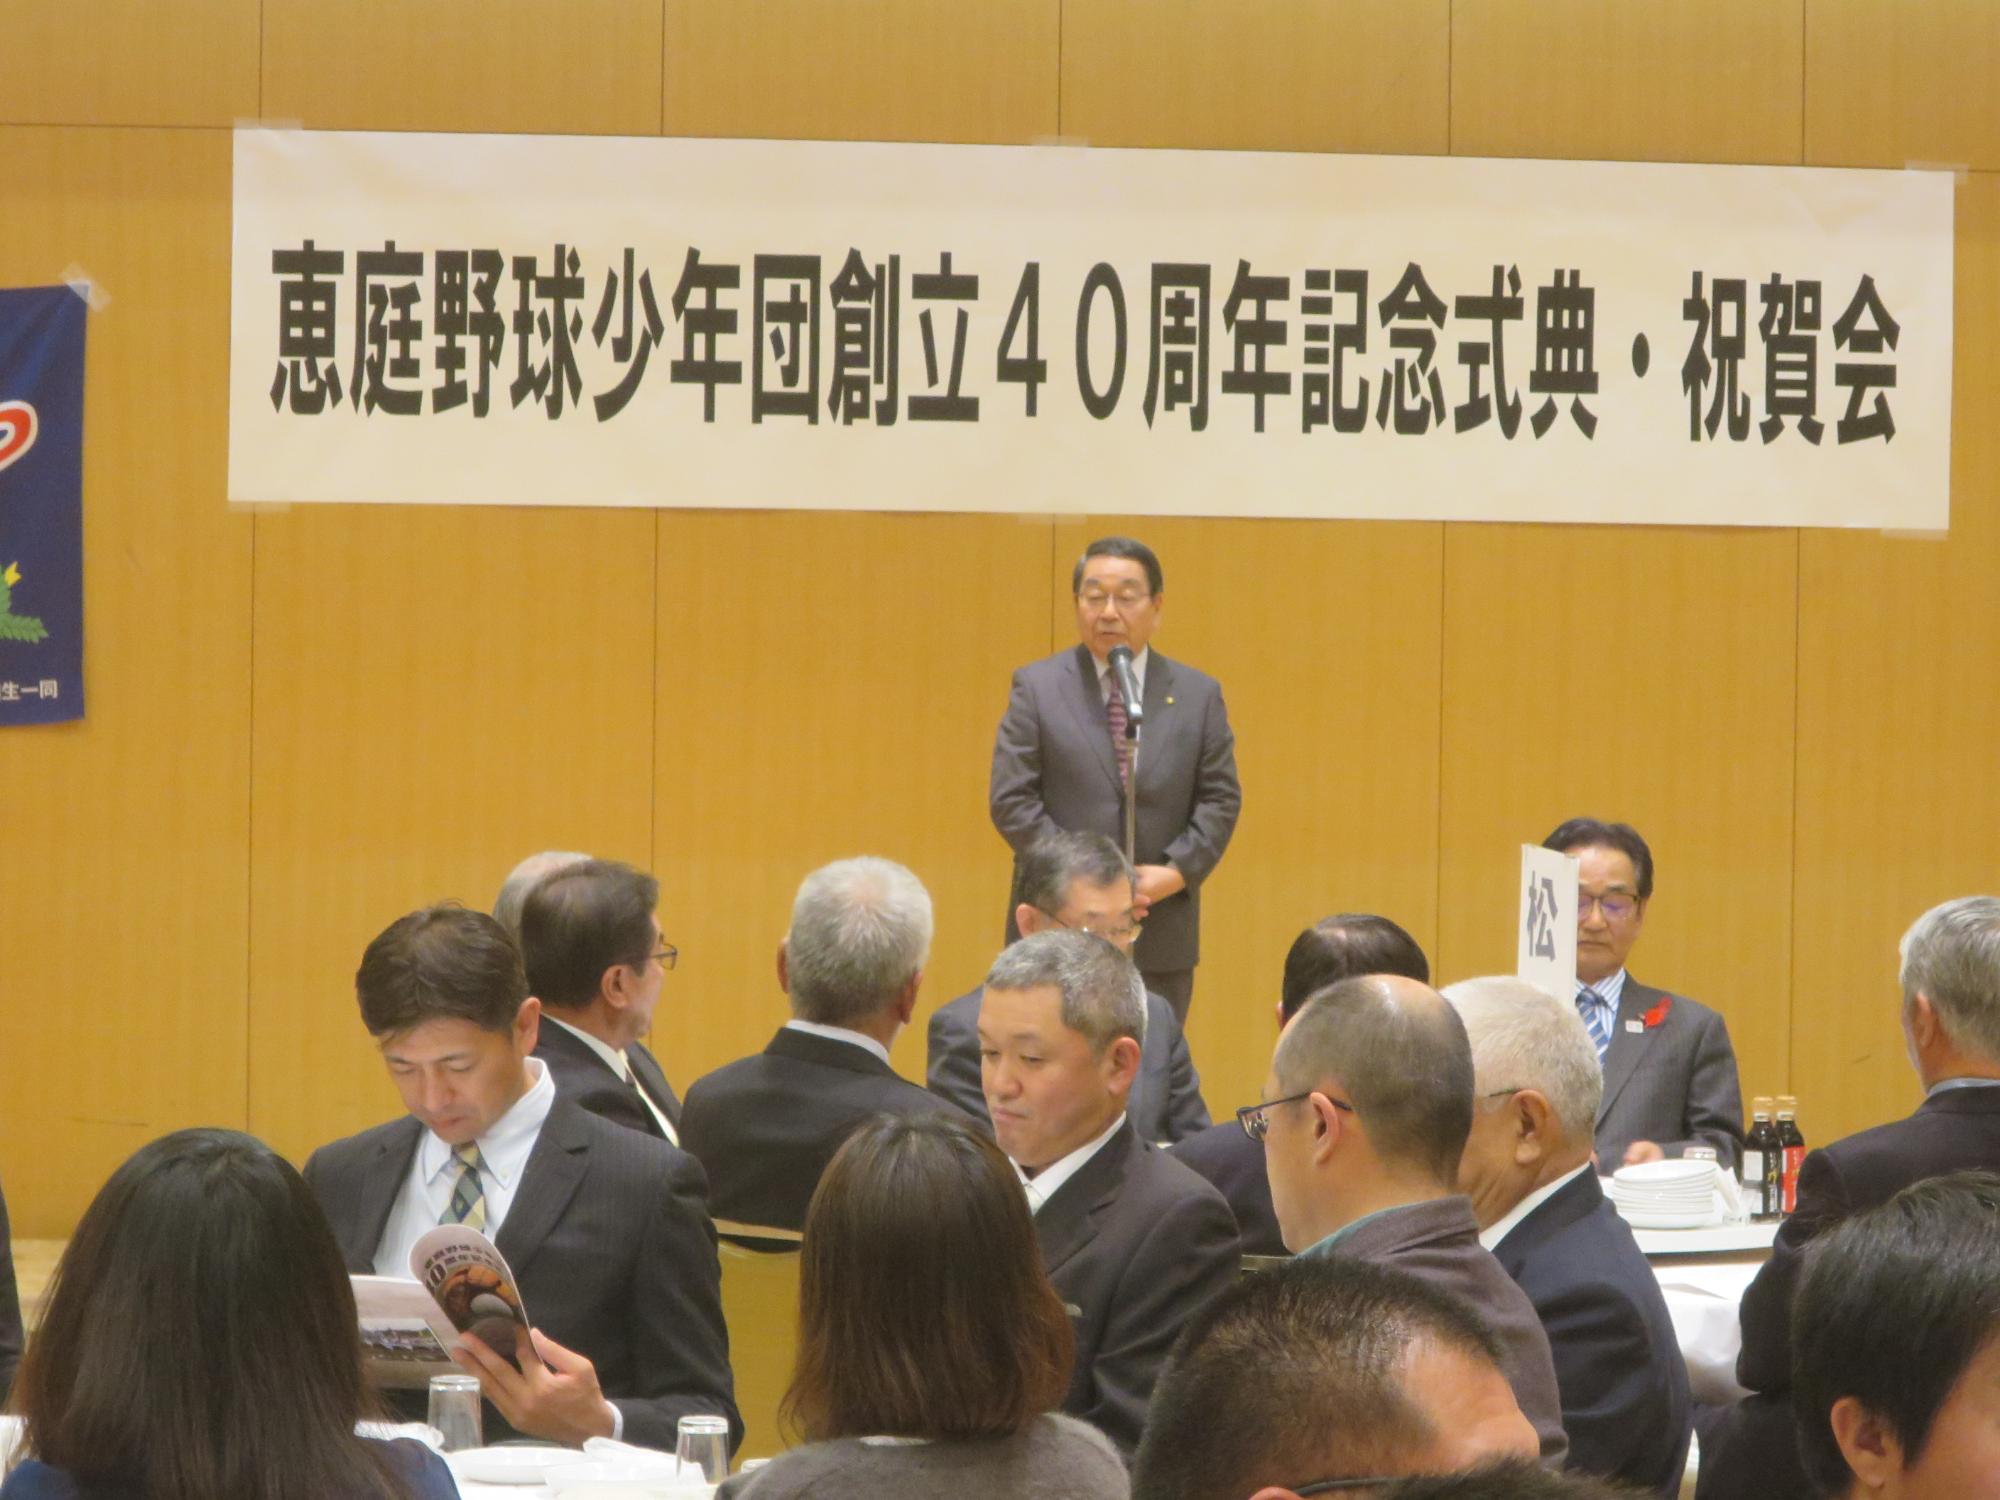 恵庭野球少年団創立40周年記念式典で挨拶をする原田市長